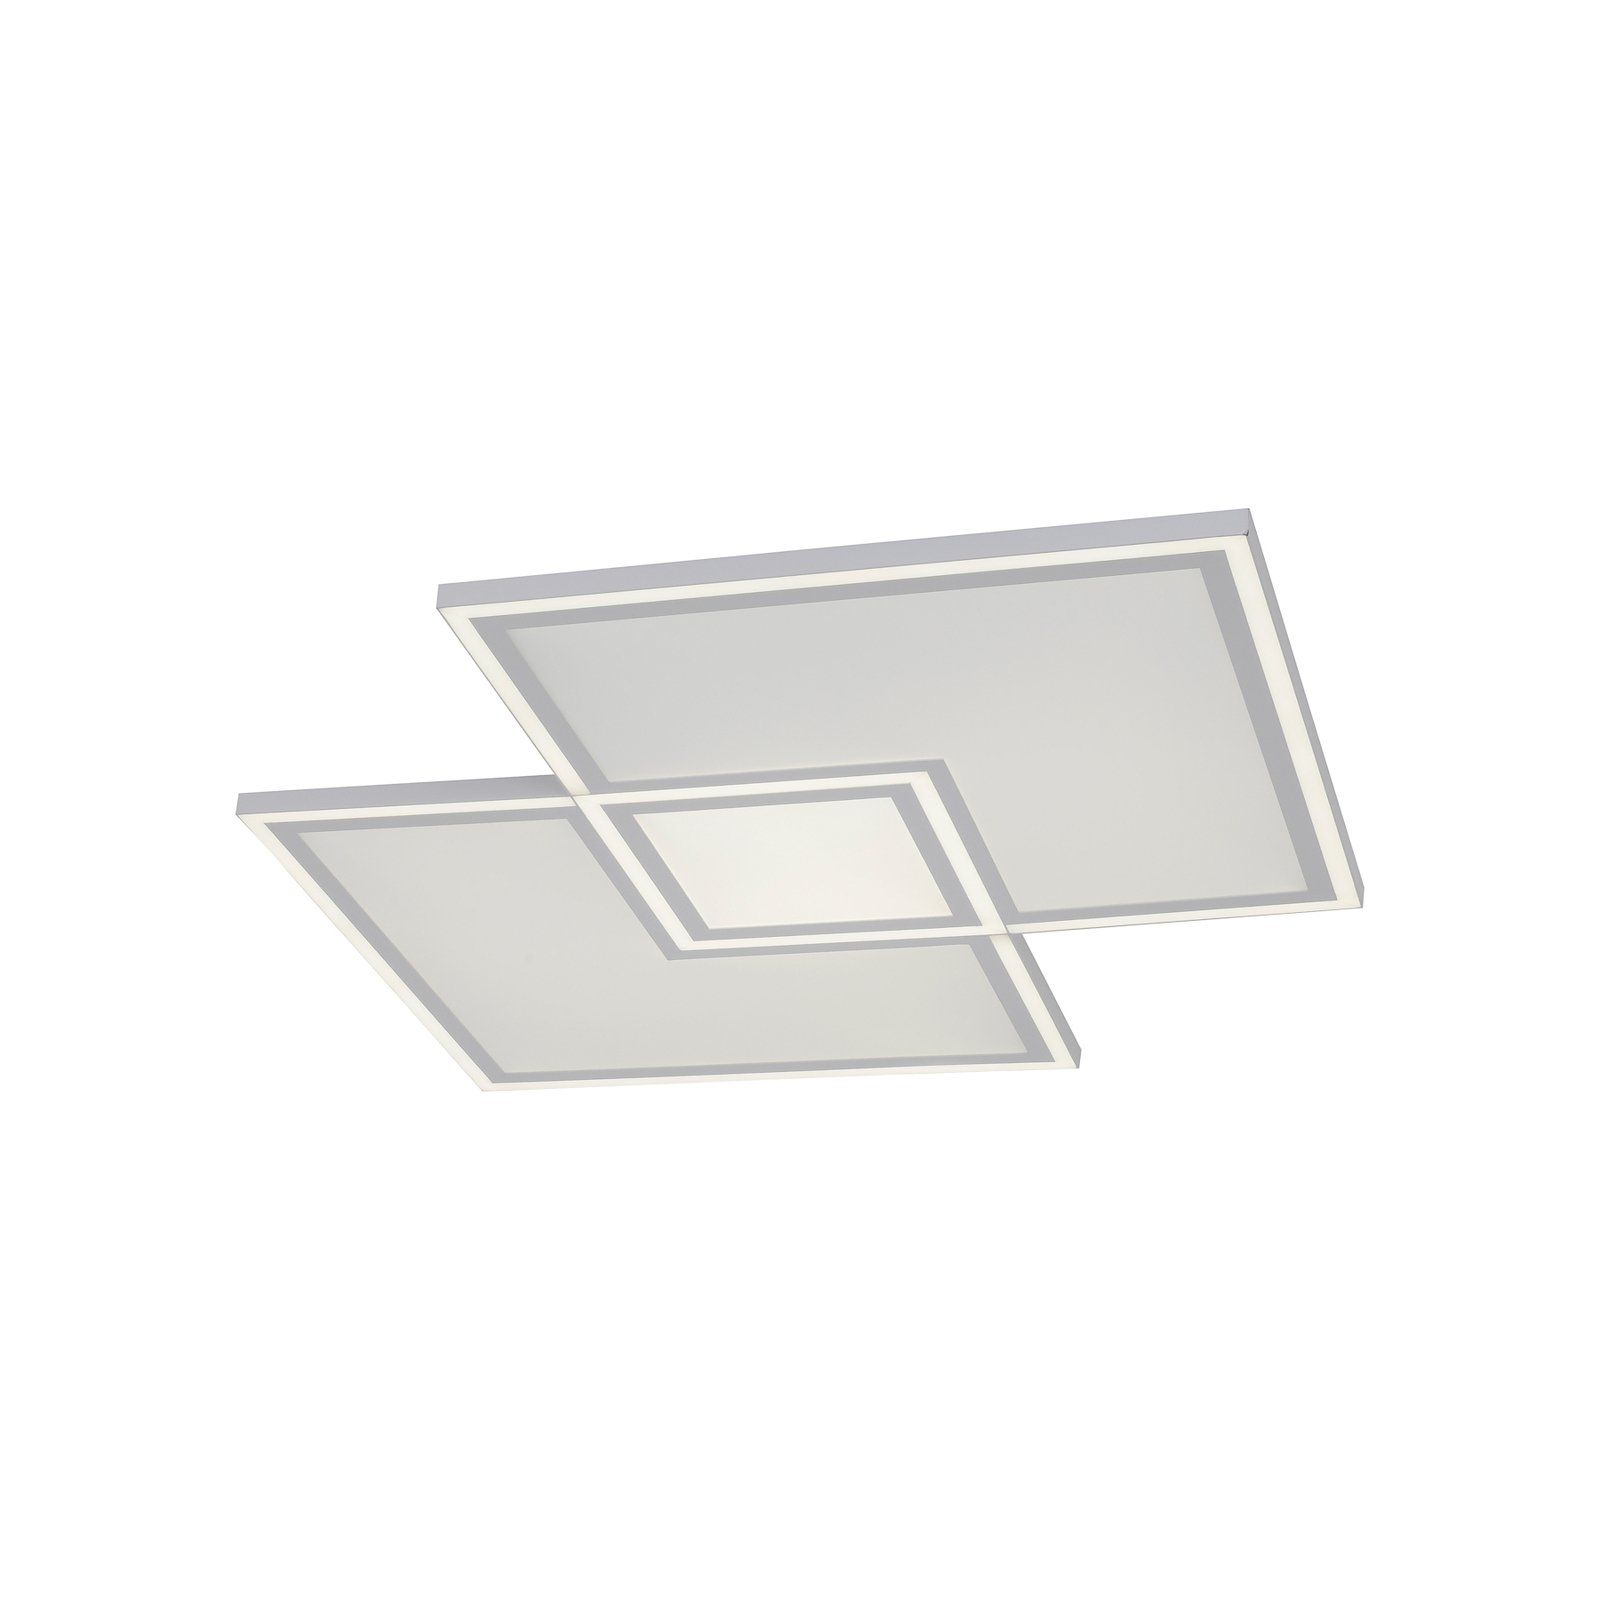 LED ceiling light Edging CCT, 67.5 x 67.5cm